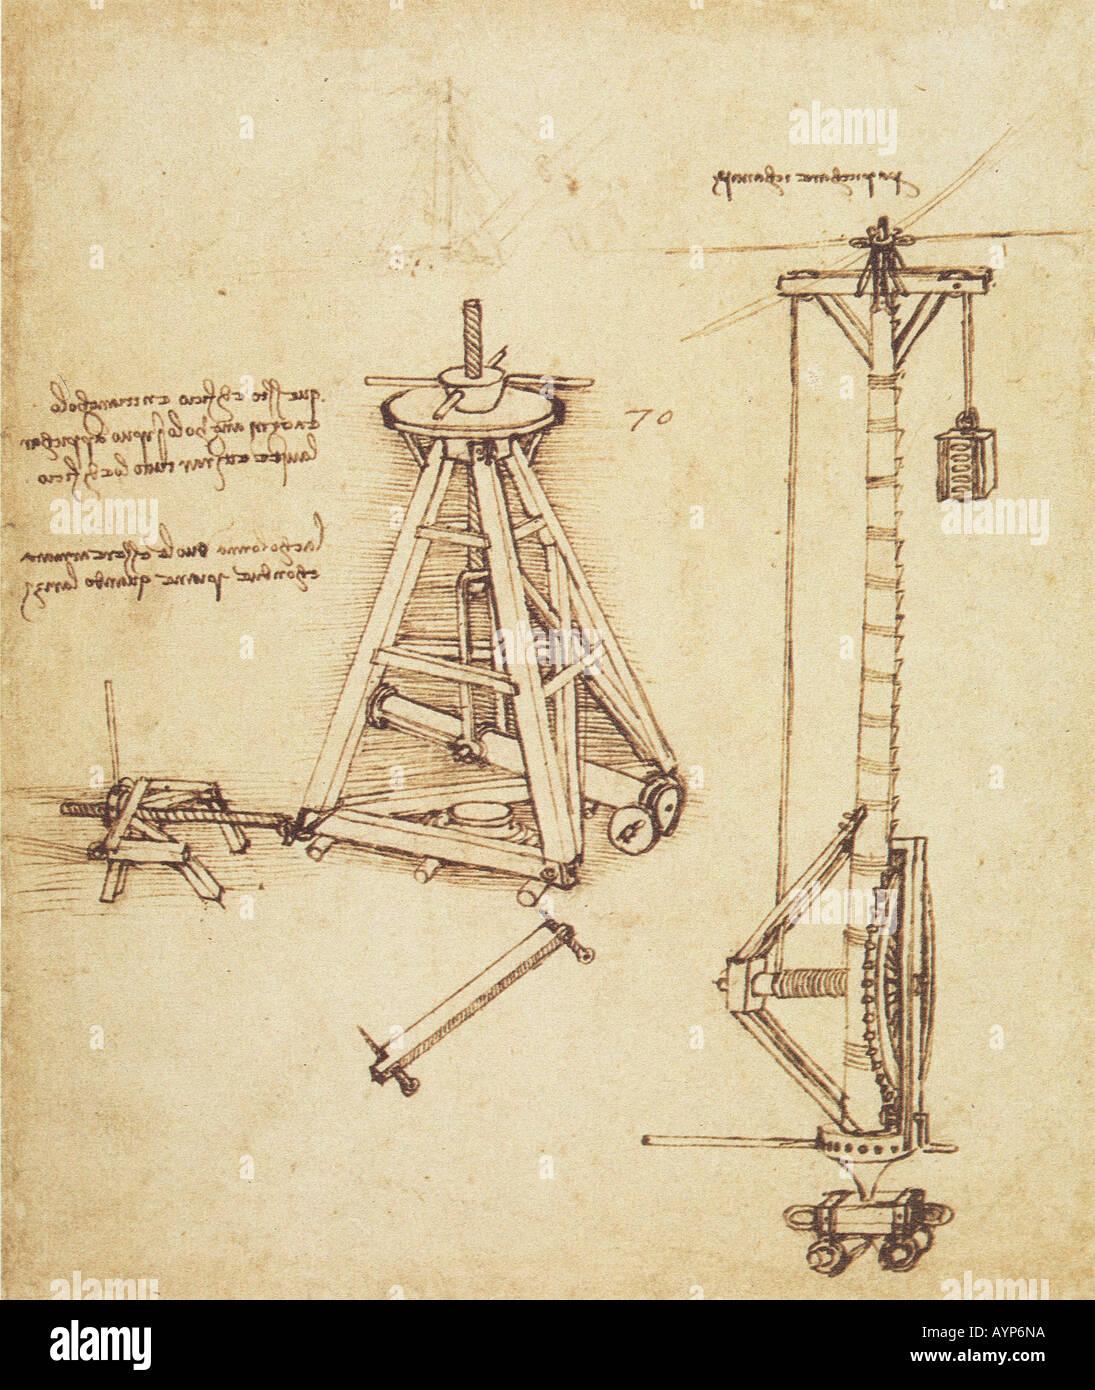 Les dessins de machines pour colonnes de levage et des poids lourds ca. 1480 par Leonardo da Vinci 1452-1519 plume et encre noire Banque D'Images